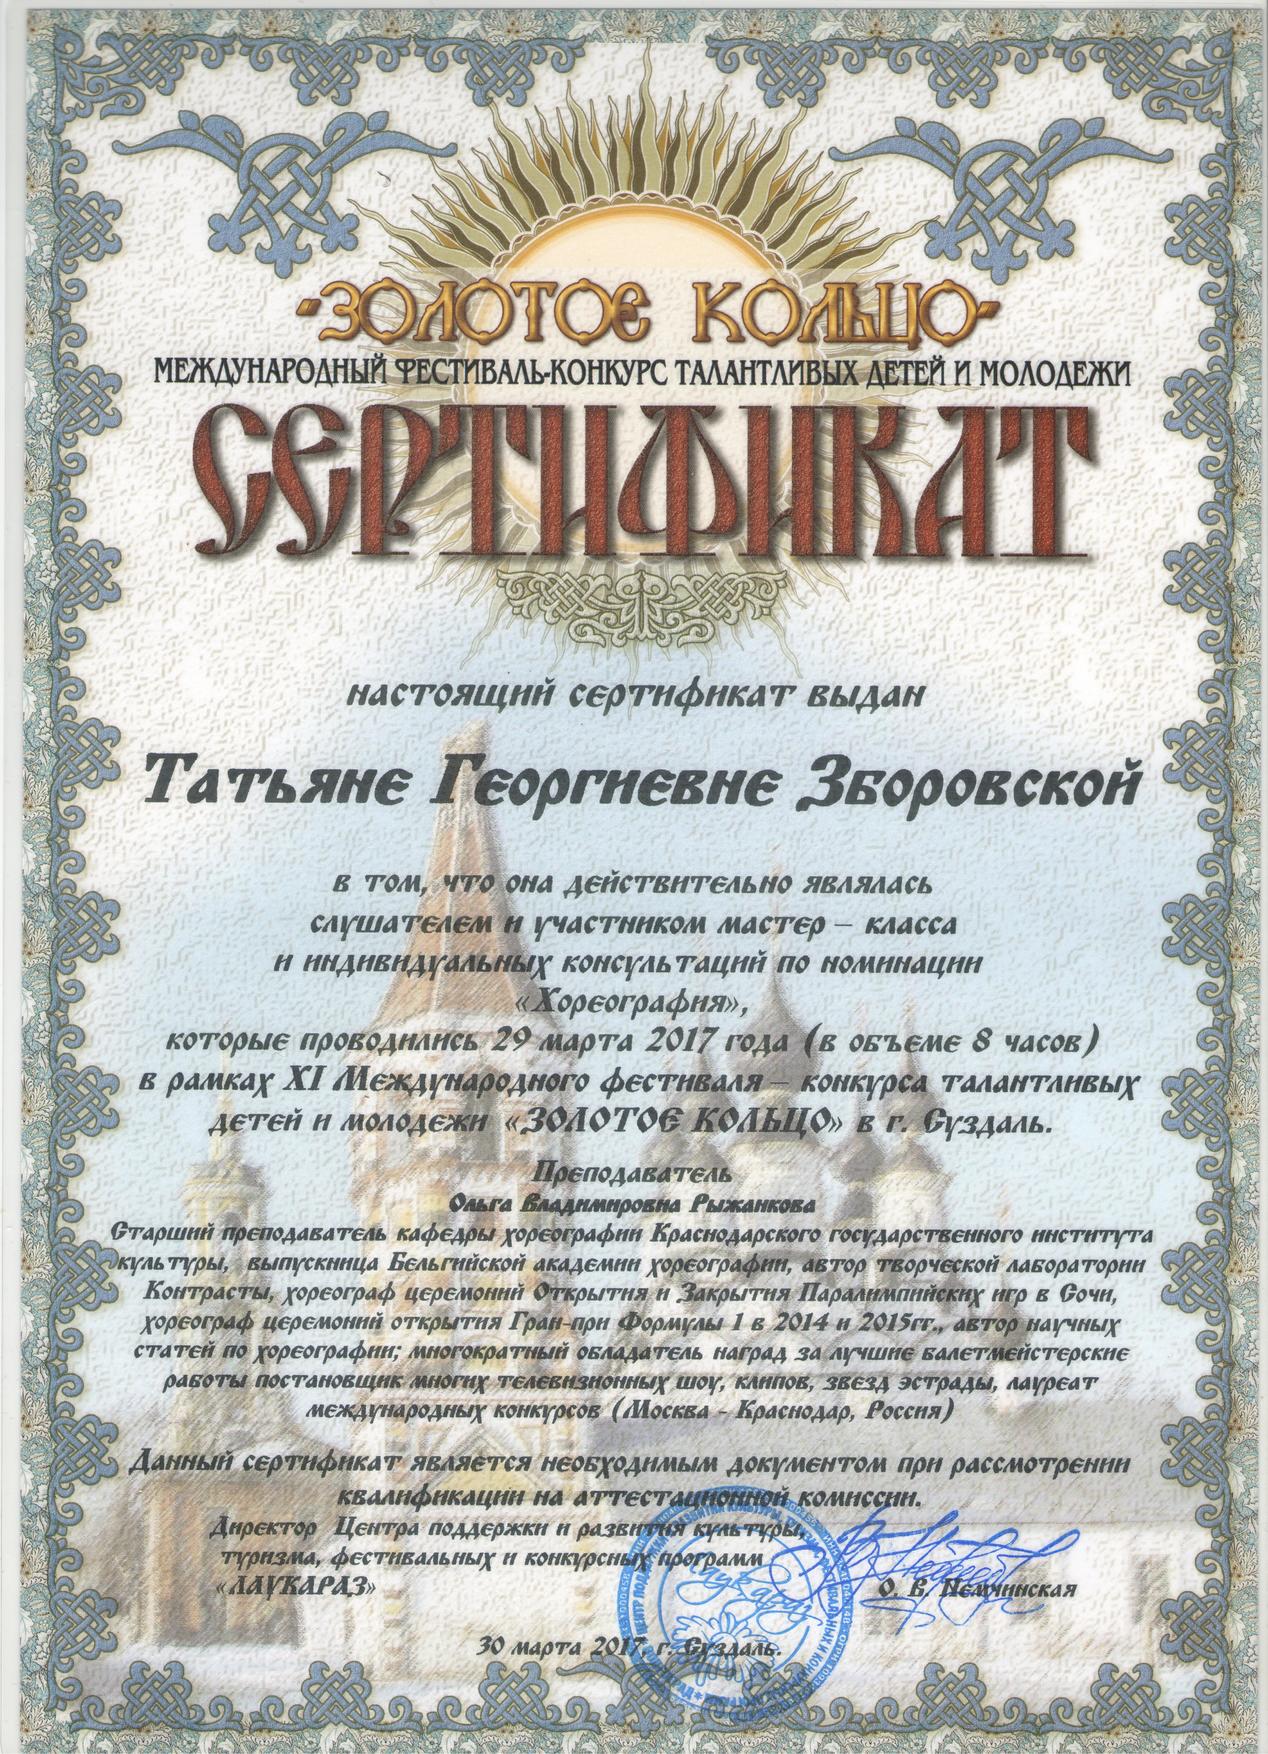 Сертификат Золотое кольцо